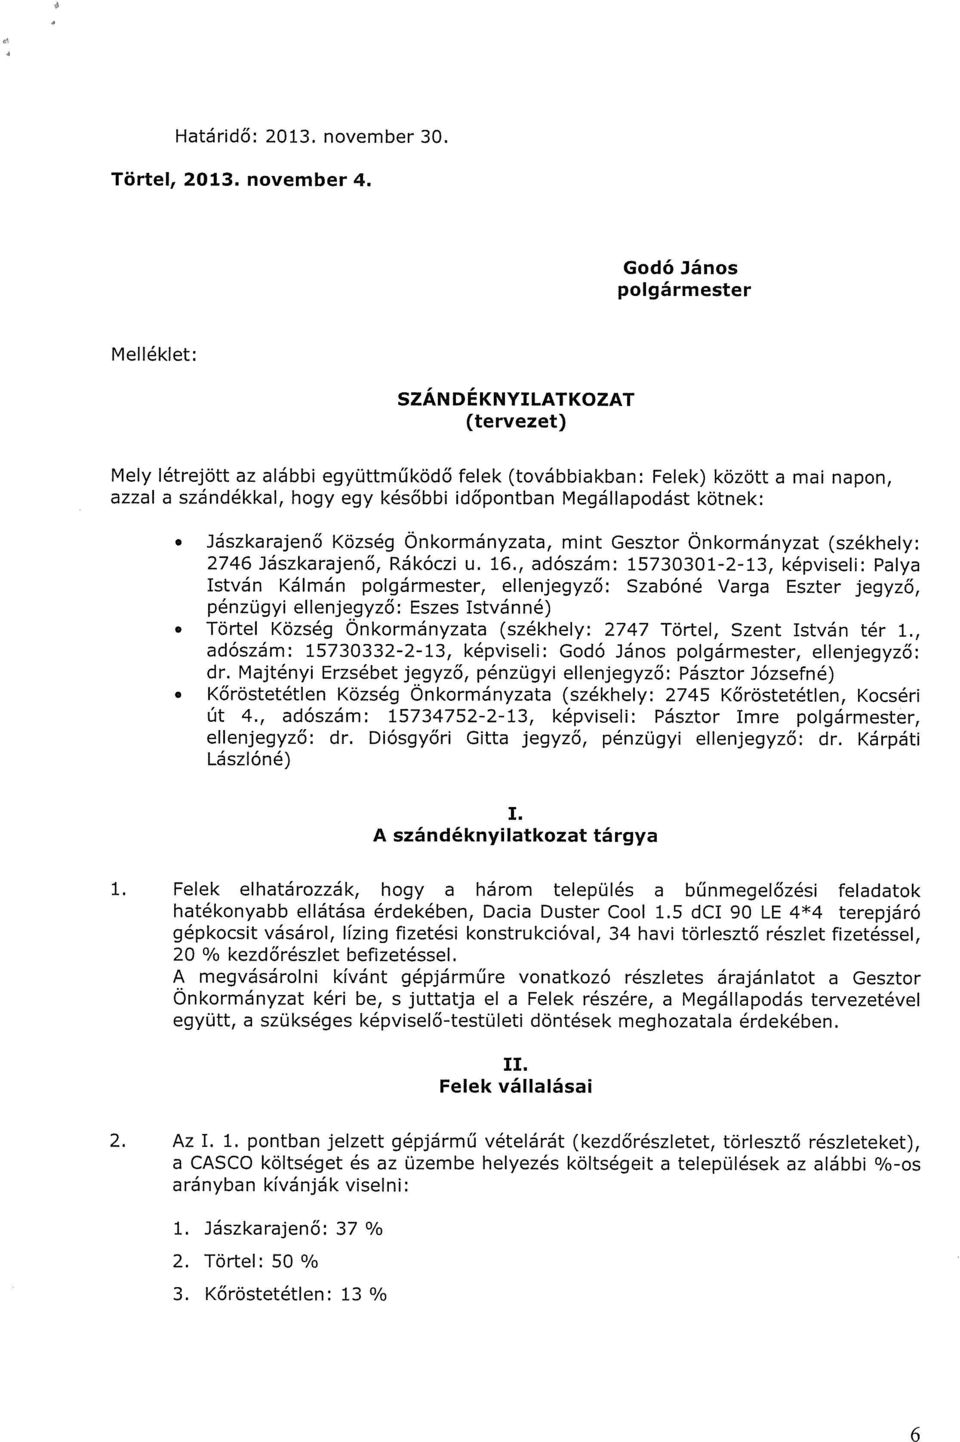 Megállapodást kötnek: Jászkarajenő Község Önkormányzata, mint Gesztor Önkormányzat (székhely: 2746 Jászkarajenő, Rákóczi u. 16.